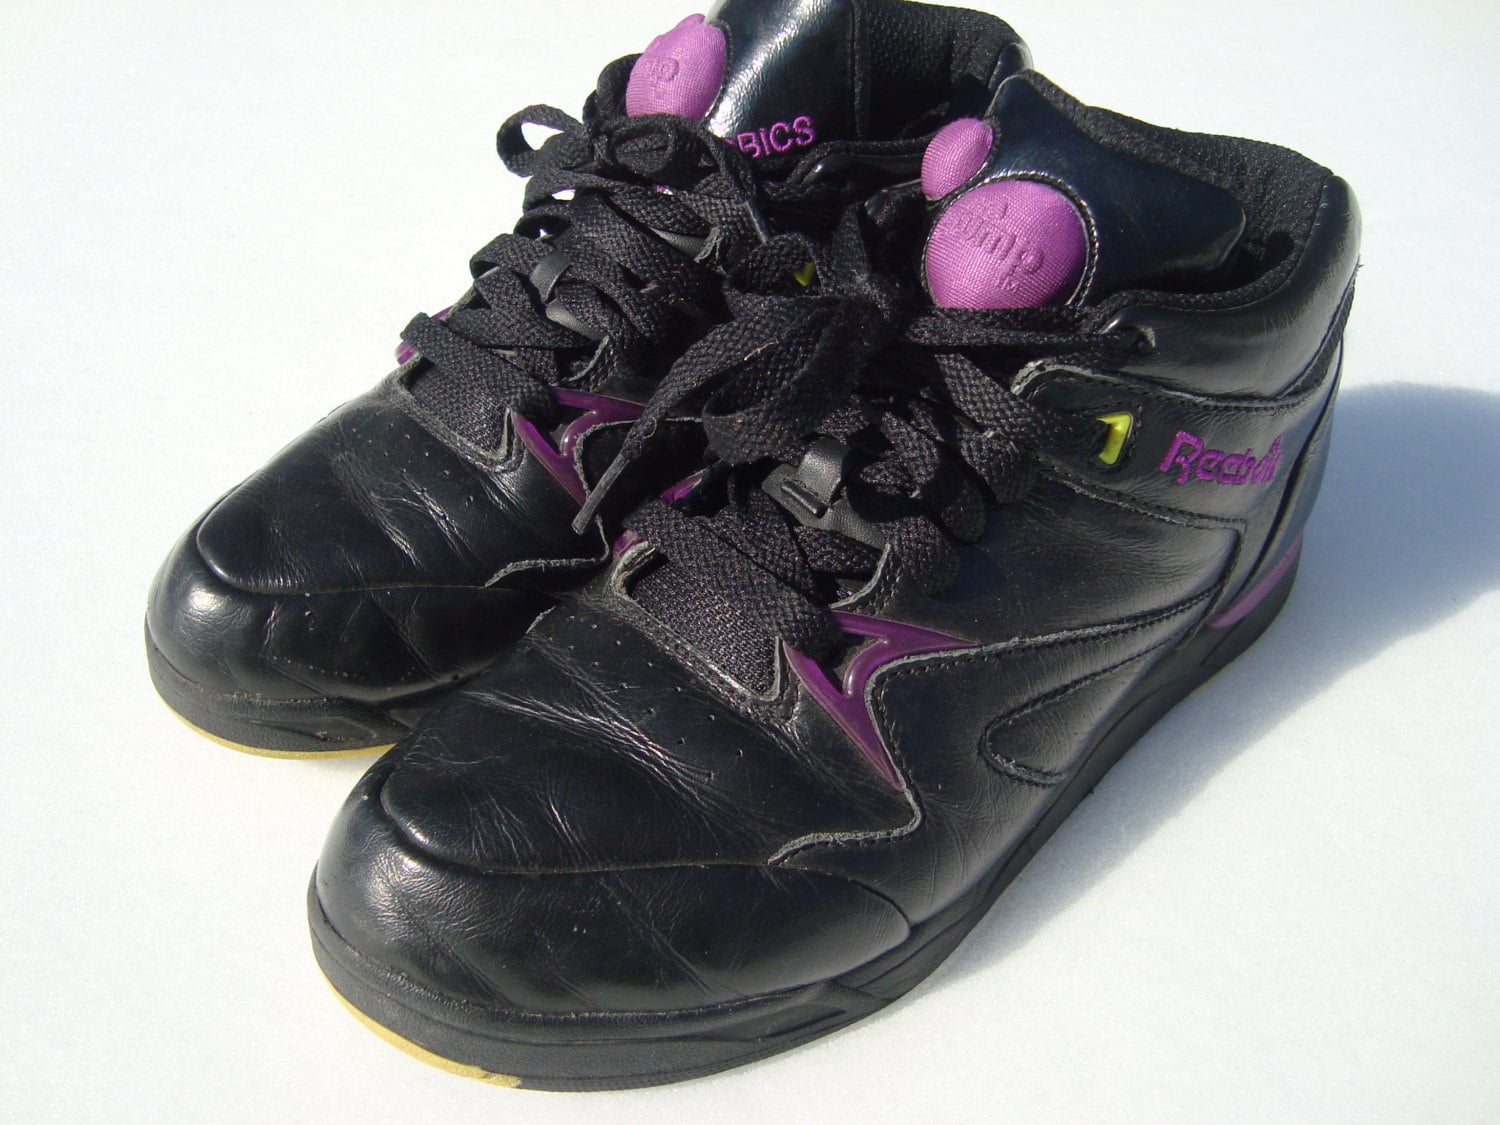 90s Pumps Vintage Shoes 90s Super Reebok Pump - Etsy Finland